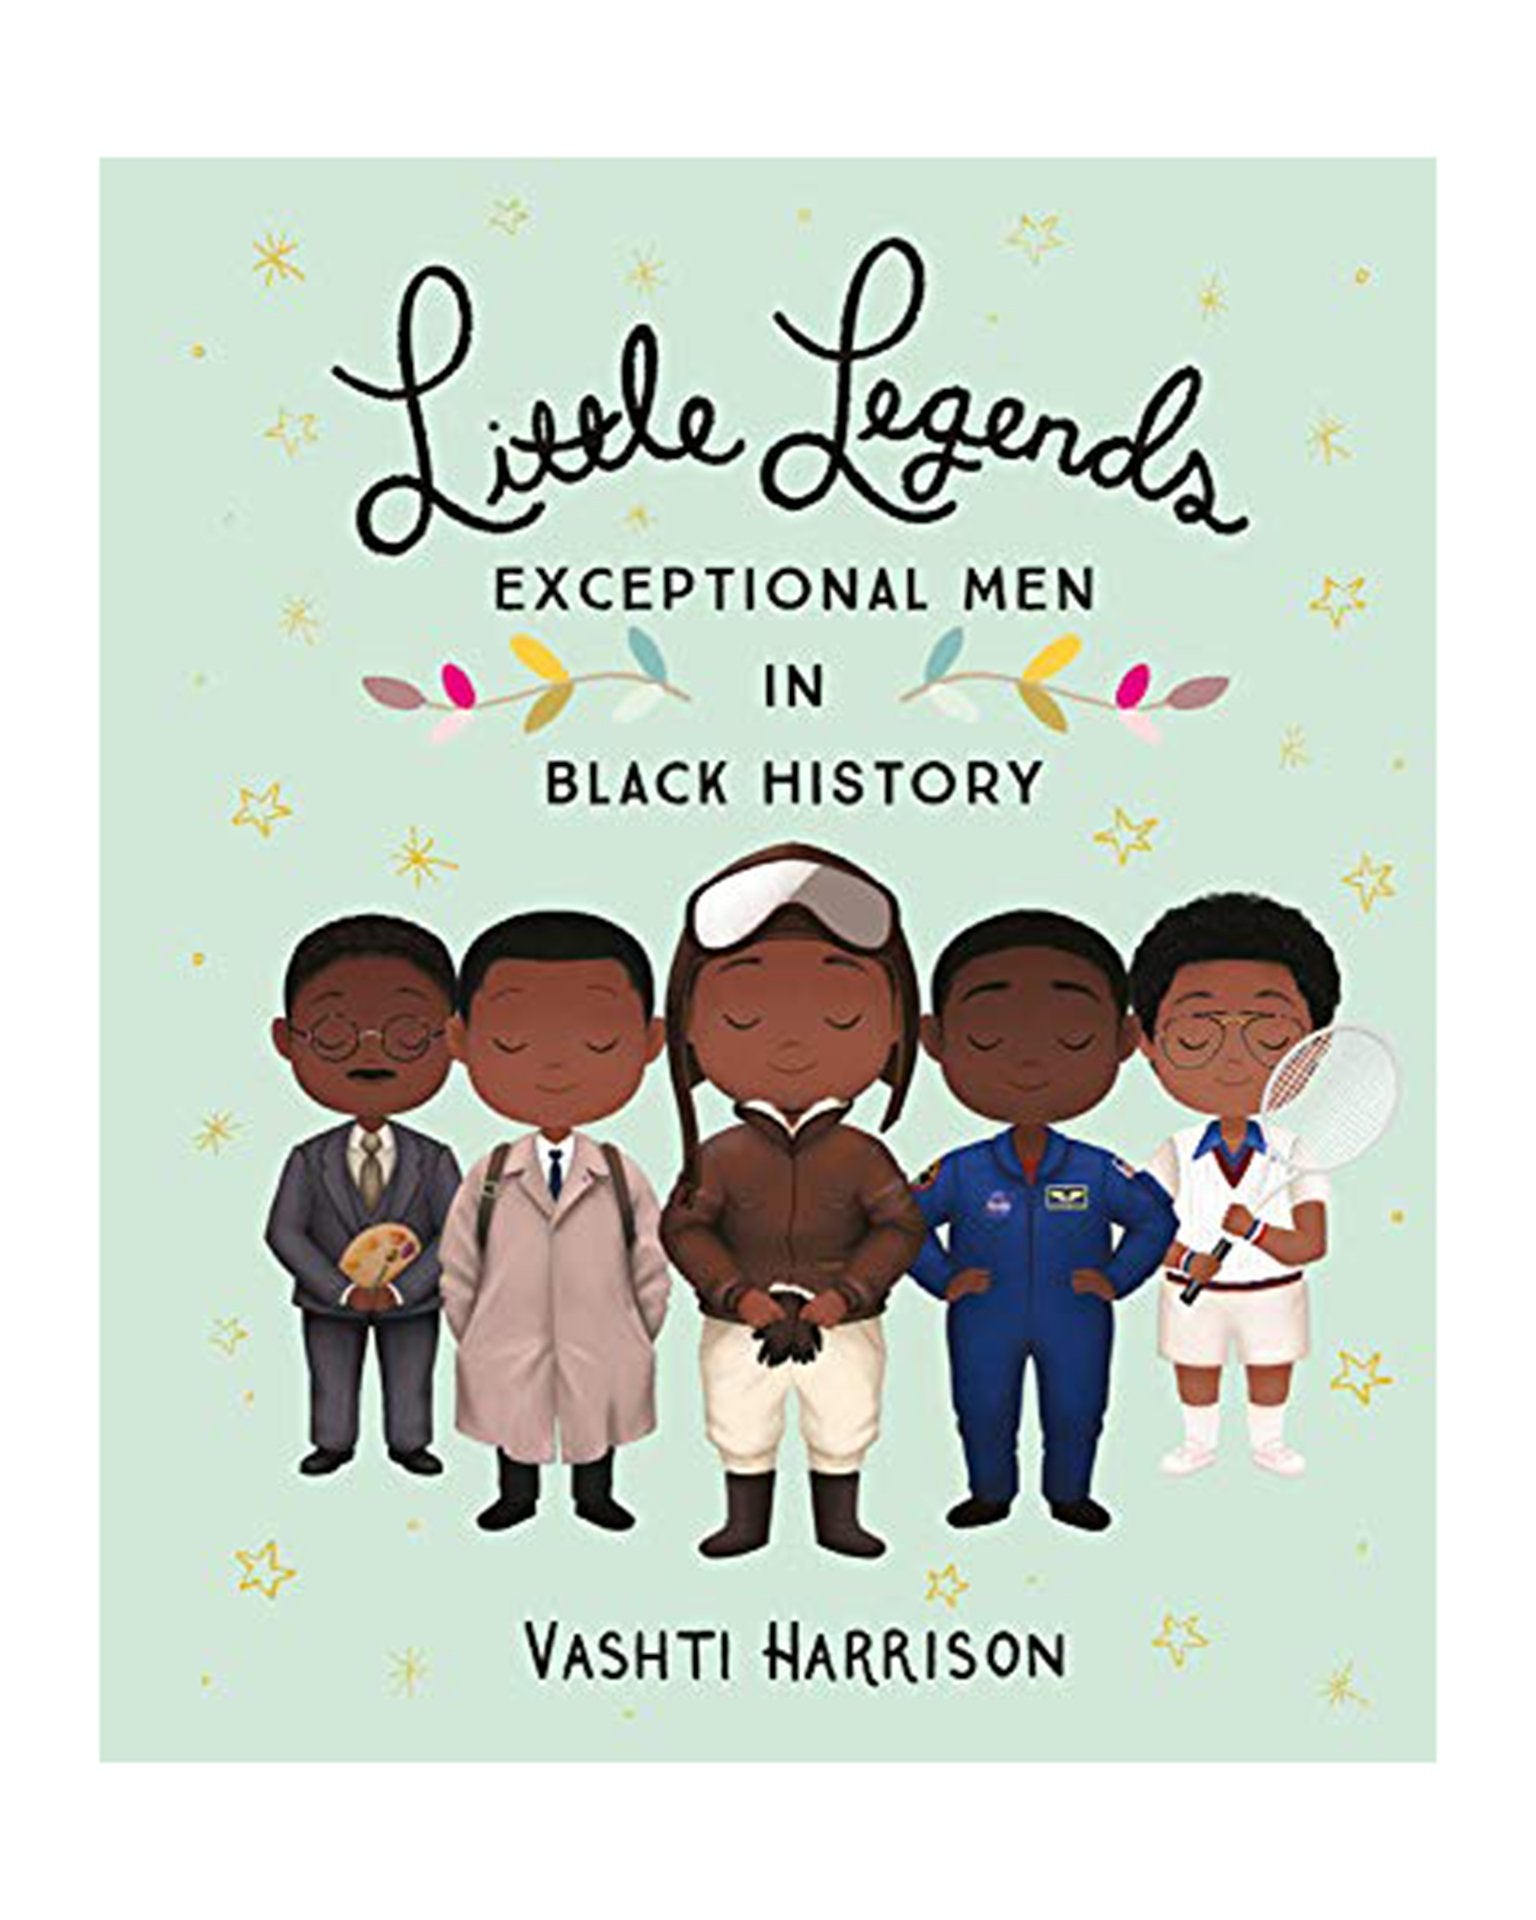 Little hachette book group play little legends: exceptional men black history